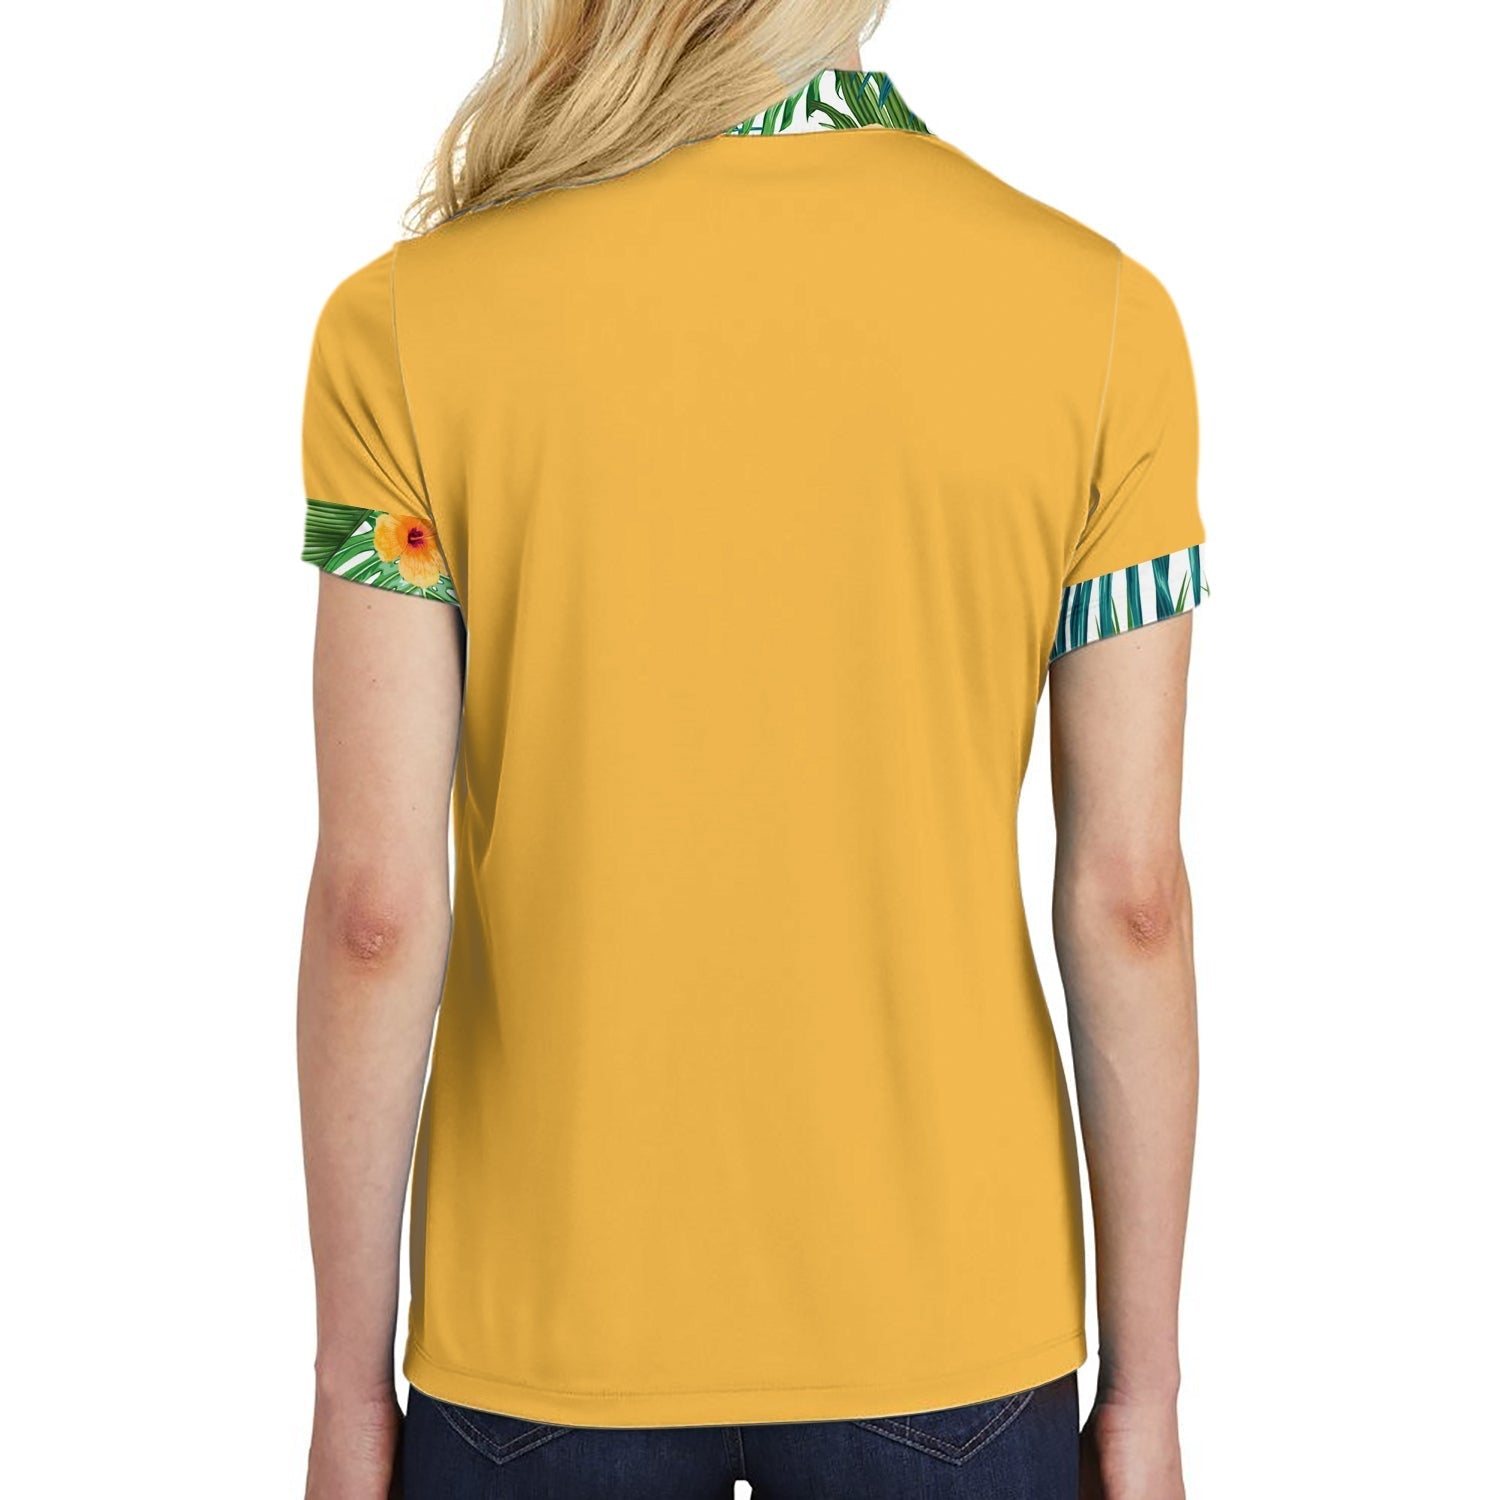 Kiss My Ace Floral Tennis Shirt For Women Short Sleeve Women Polo Shirt Coolspod